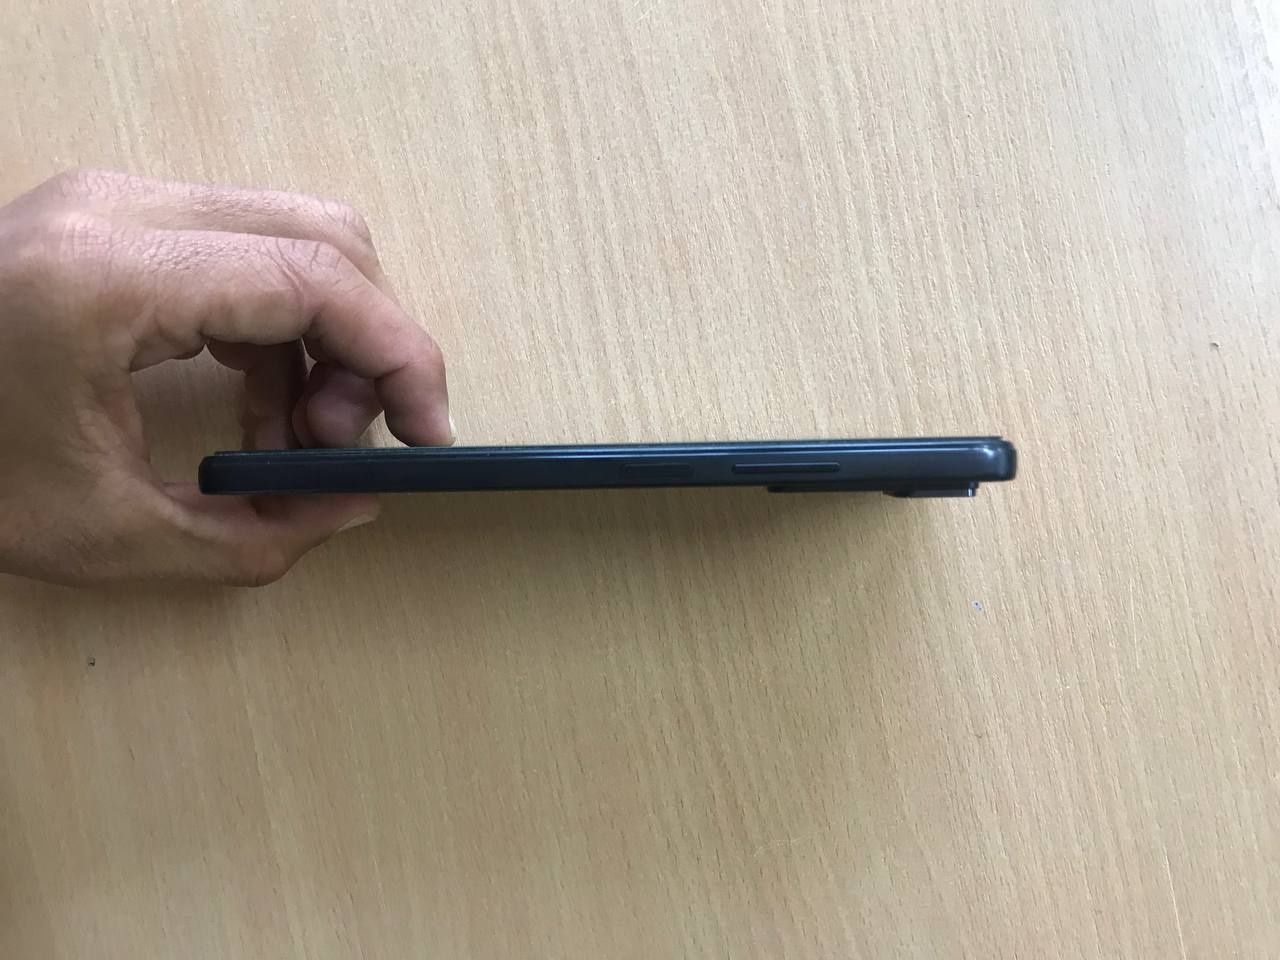 Redmi Note 11 pro 13/128 GB yangidek yaxshi ishlatilgan